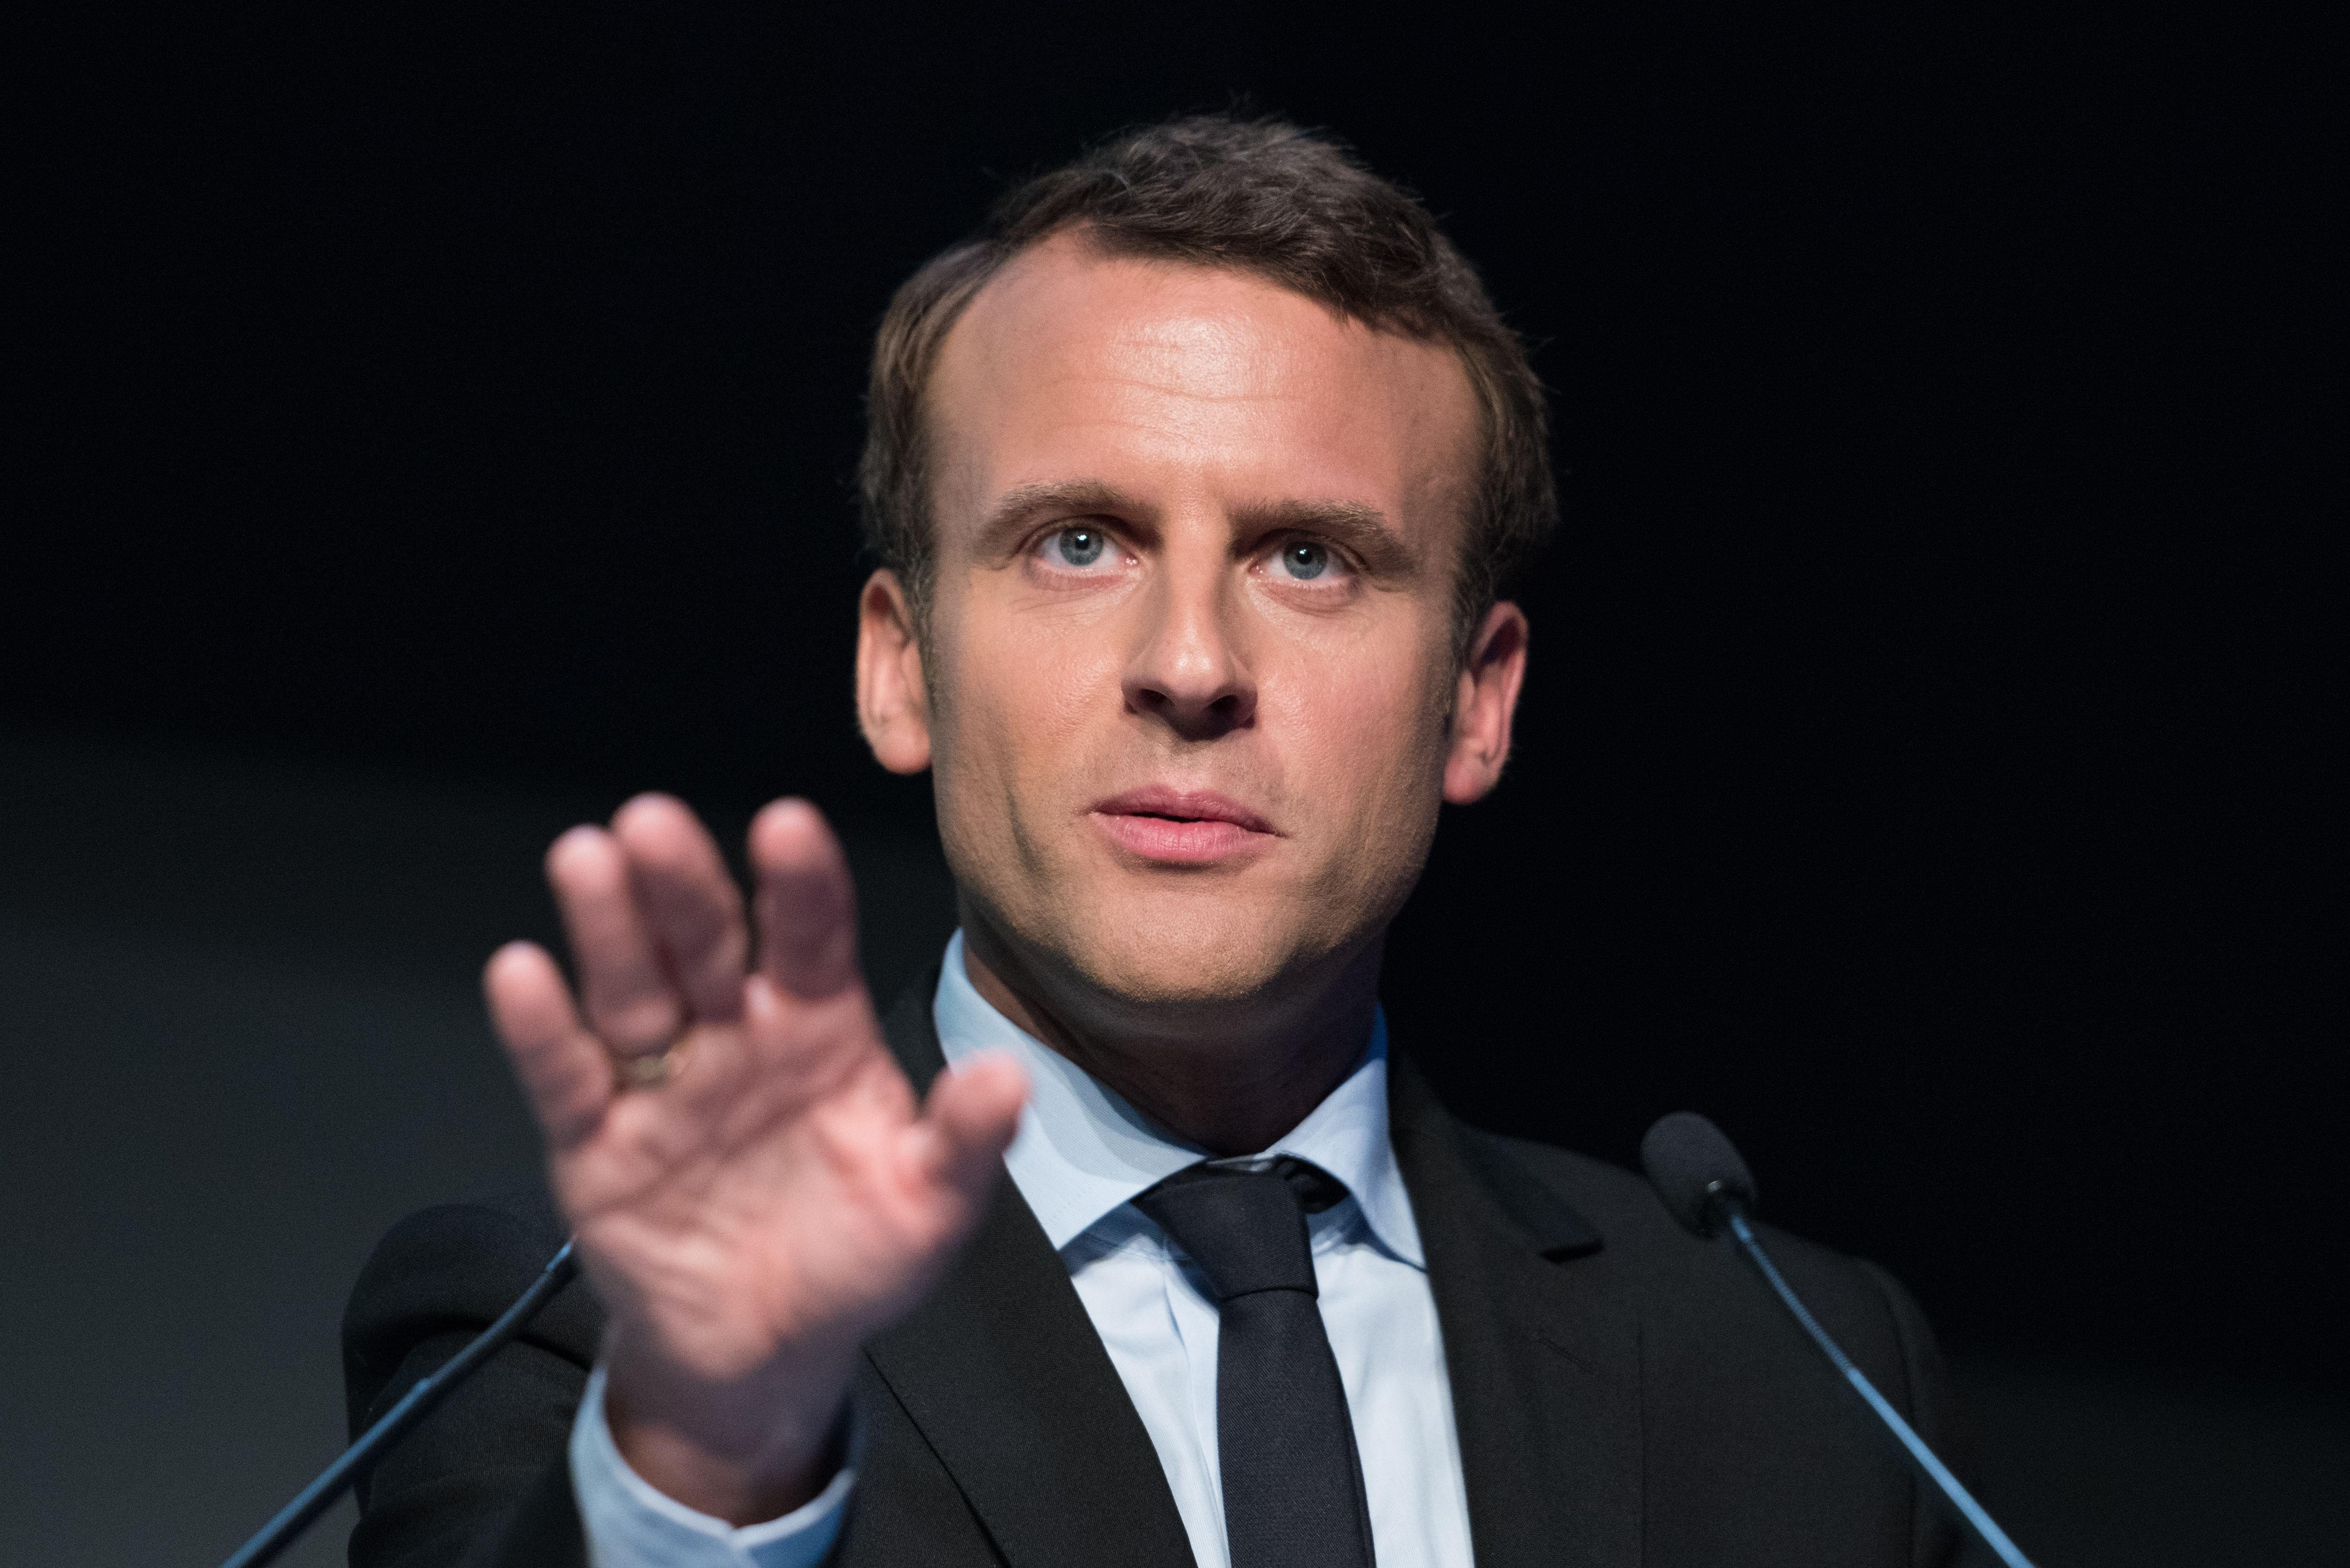 Le président de la République Emmanuel Macron. l Source : Shutterstock